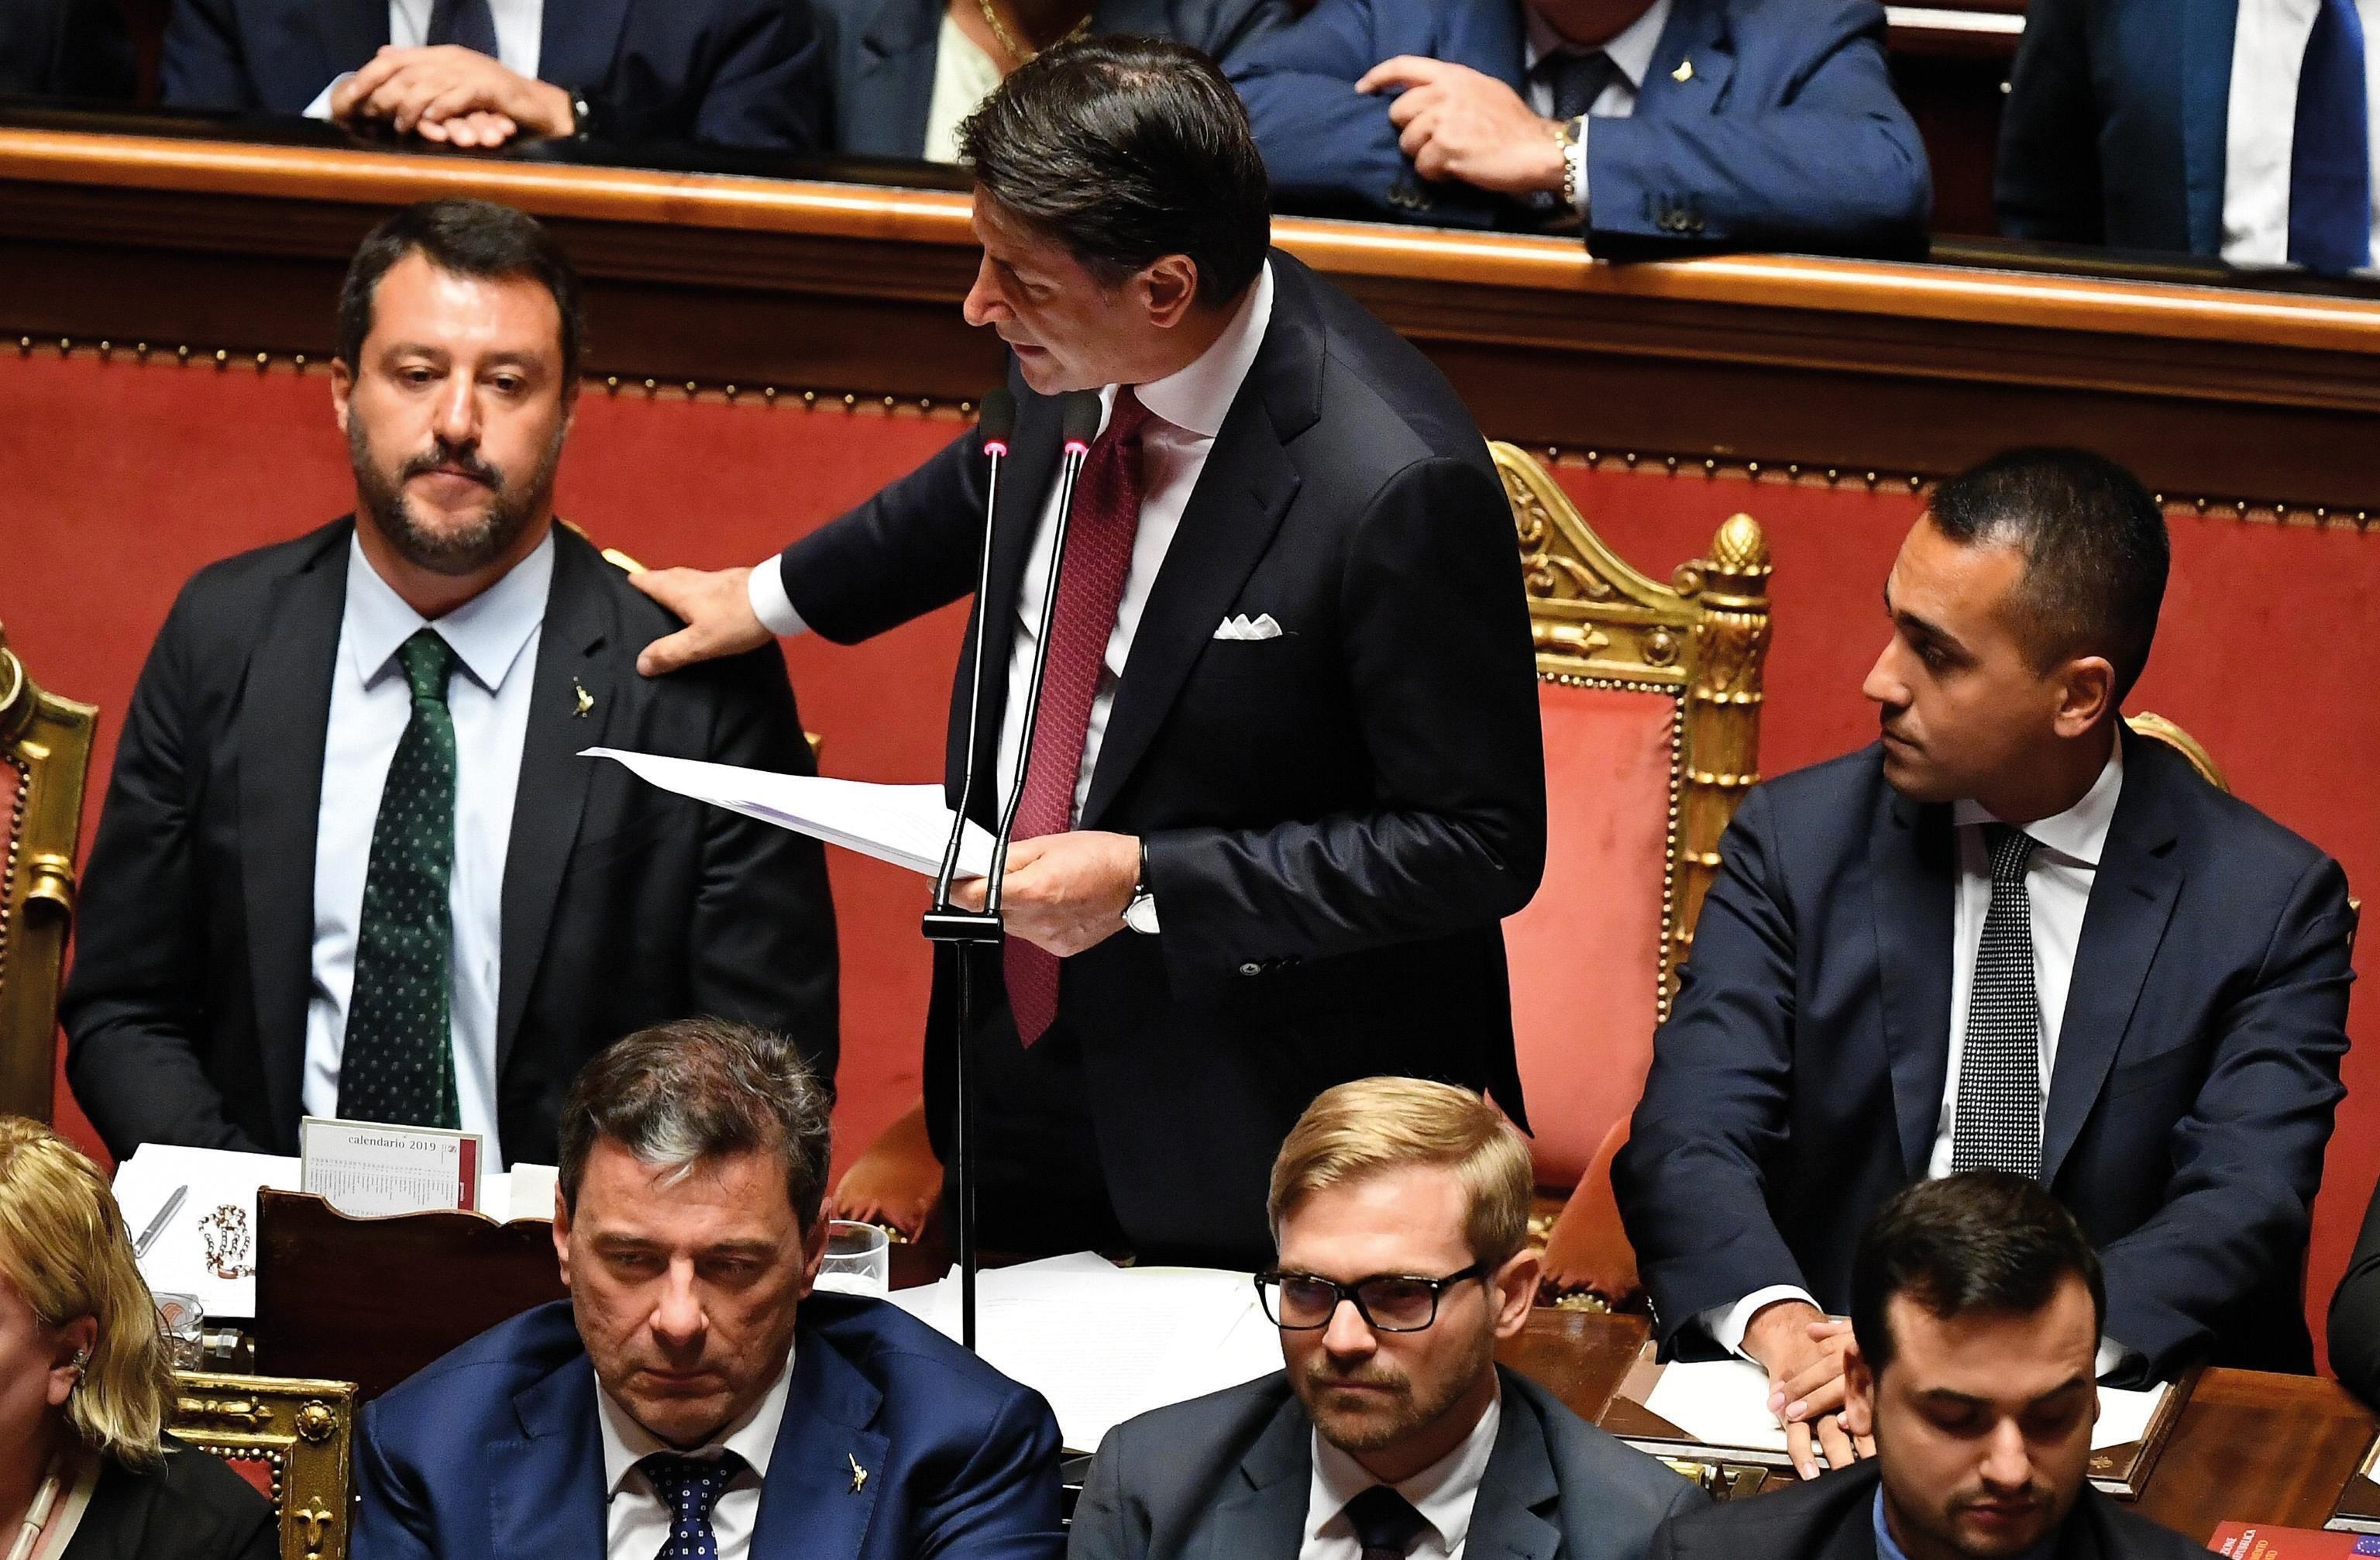 Conte contro Salvini, 20 agosto: il discorso del presidente del Consiglio contro l'allora vicepremier Matteo Salvini apre la crisi di governo in Italia, che porterà alla formazione di una nuova maggioranza tra M5S e Pd